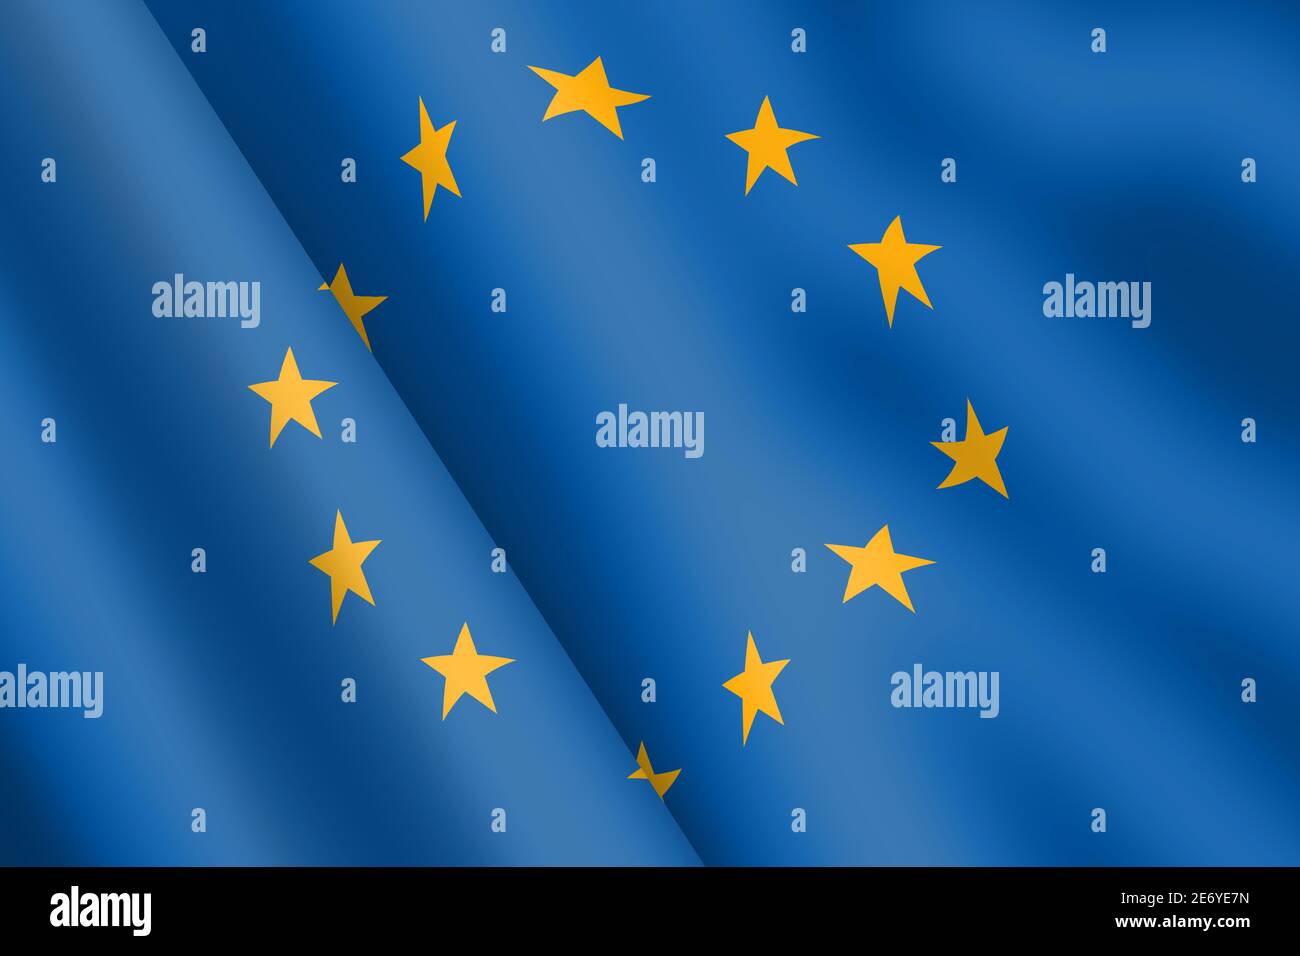 Drapeau de l'Union européenne - illustration 3d - ondulation du vent Banque D'Images